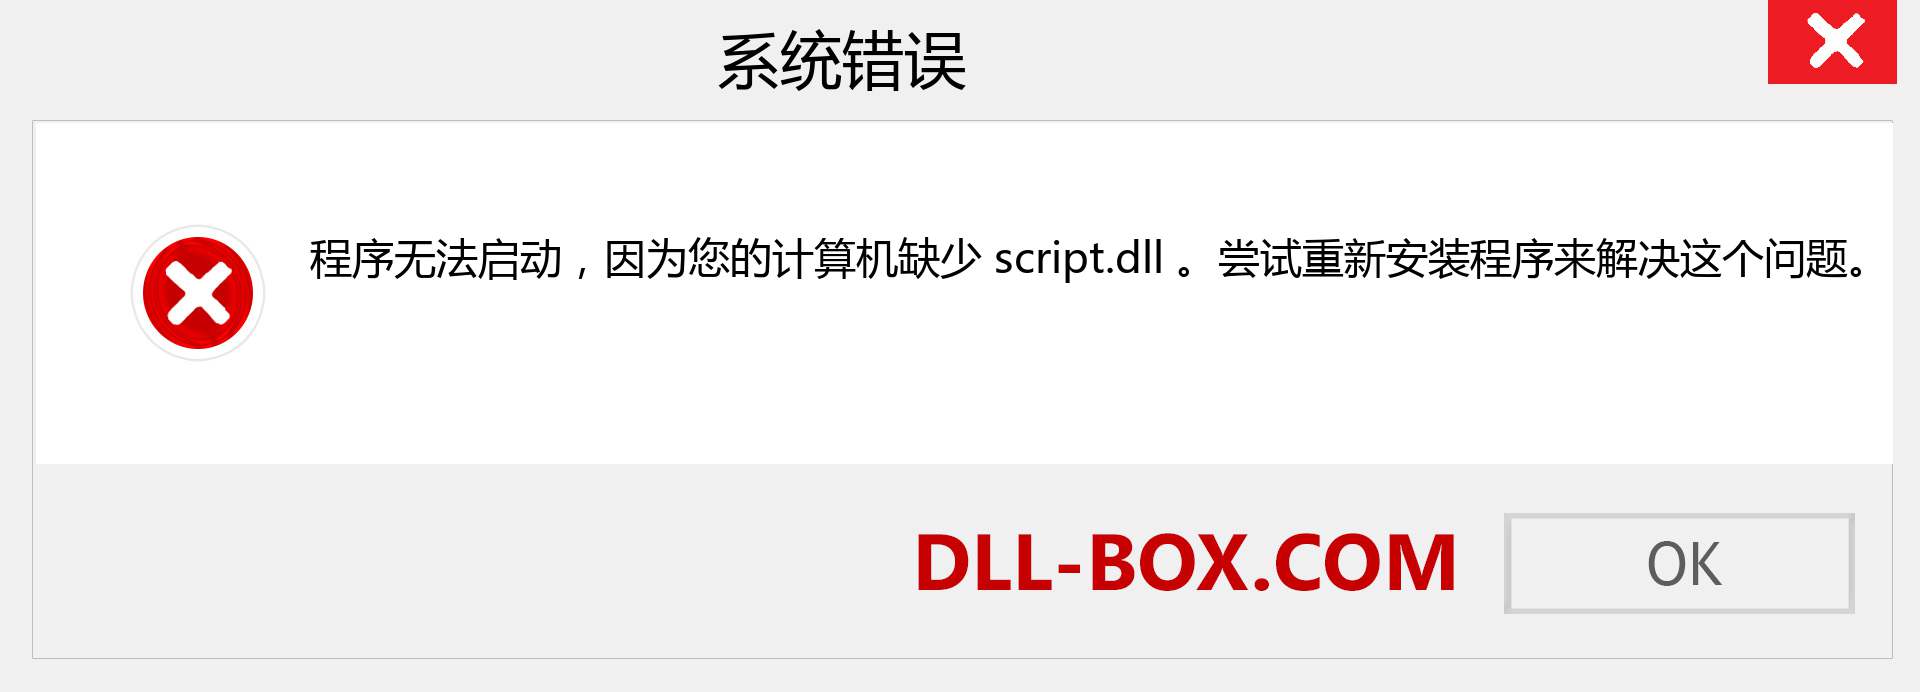 script.dll 文件丢失？。 适用于 Windows 7、8、10 的下载 - 修复 Windows、照片、图像上的 script dll 丢失错误